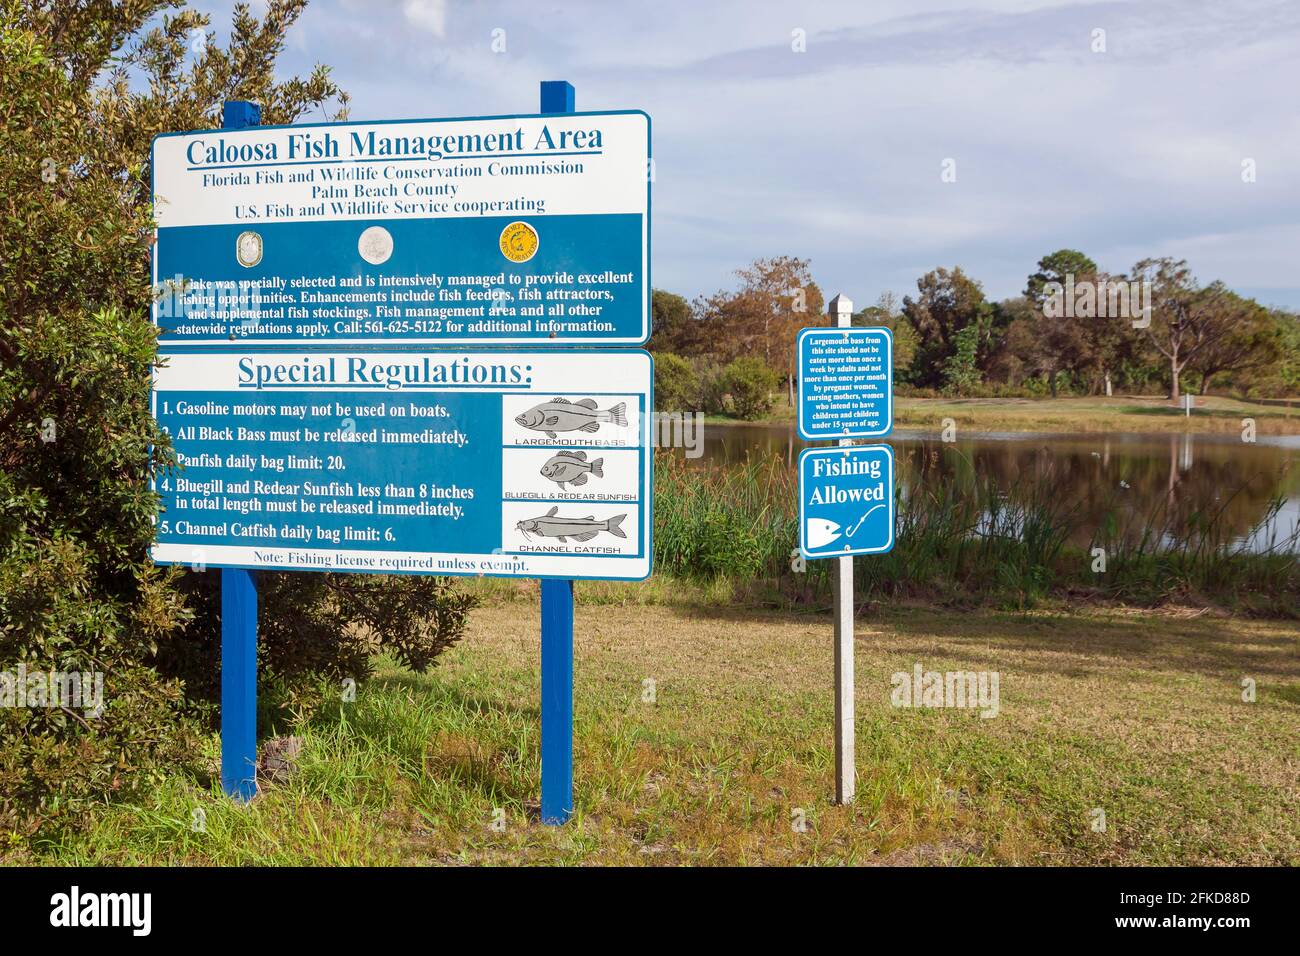 Inscrivez-vous dans le parc Caloosa du comté de Palm Beach en Floride pour connaître les règles et règlements de gestion du poisson. Banque D'Images